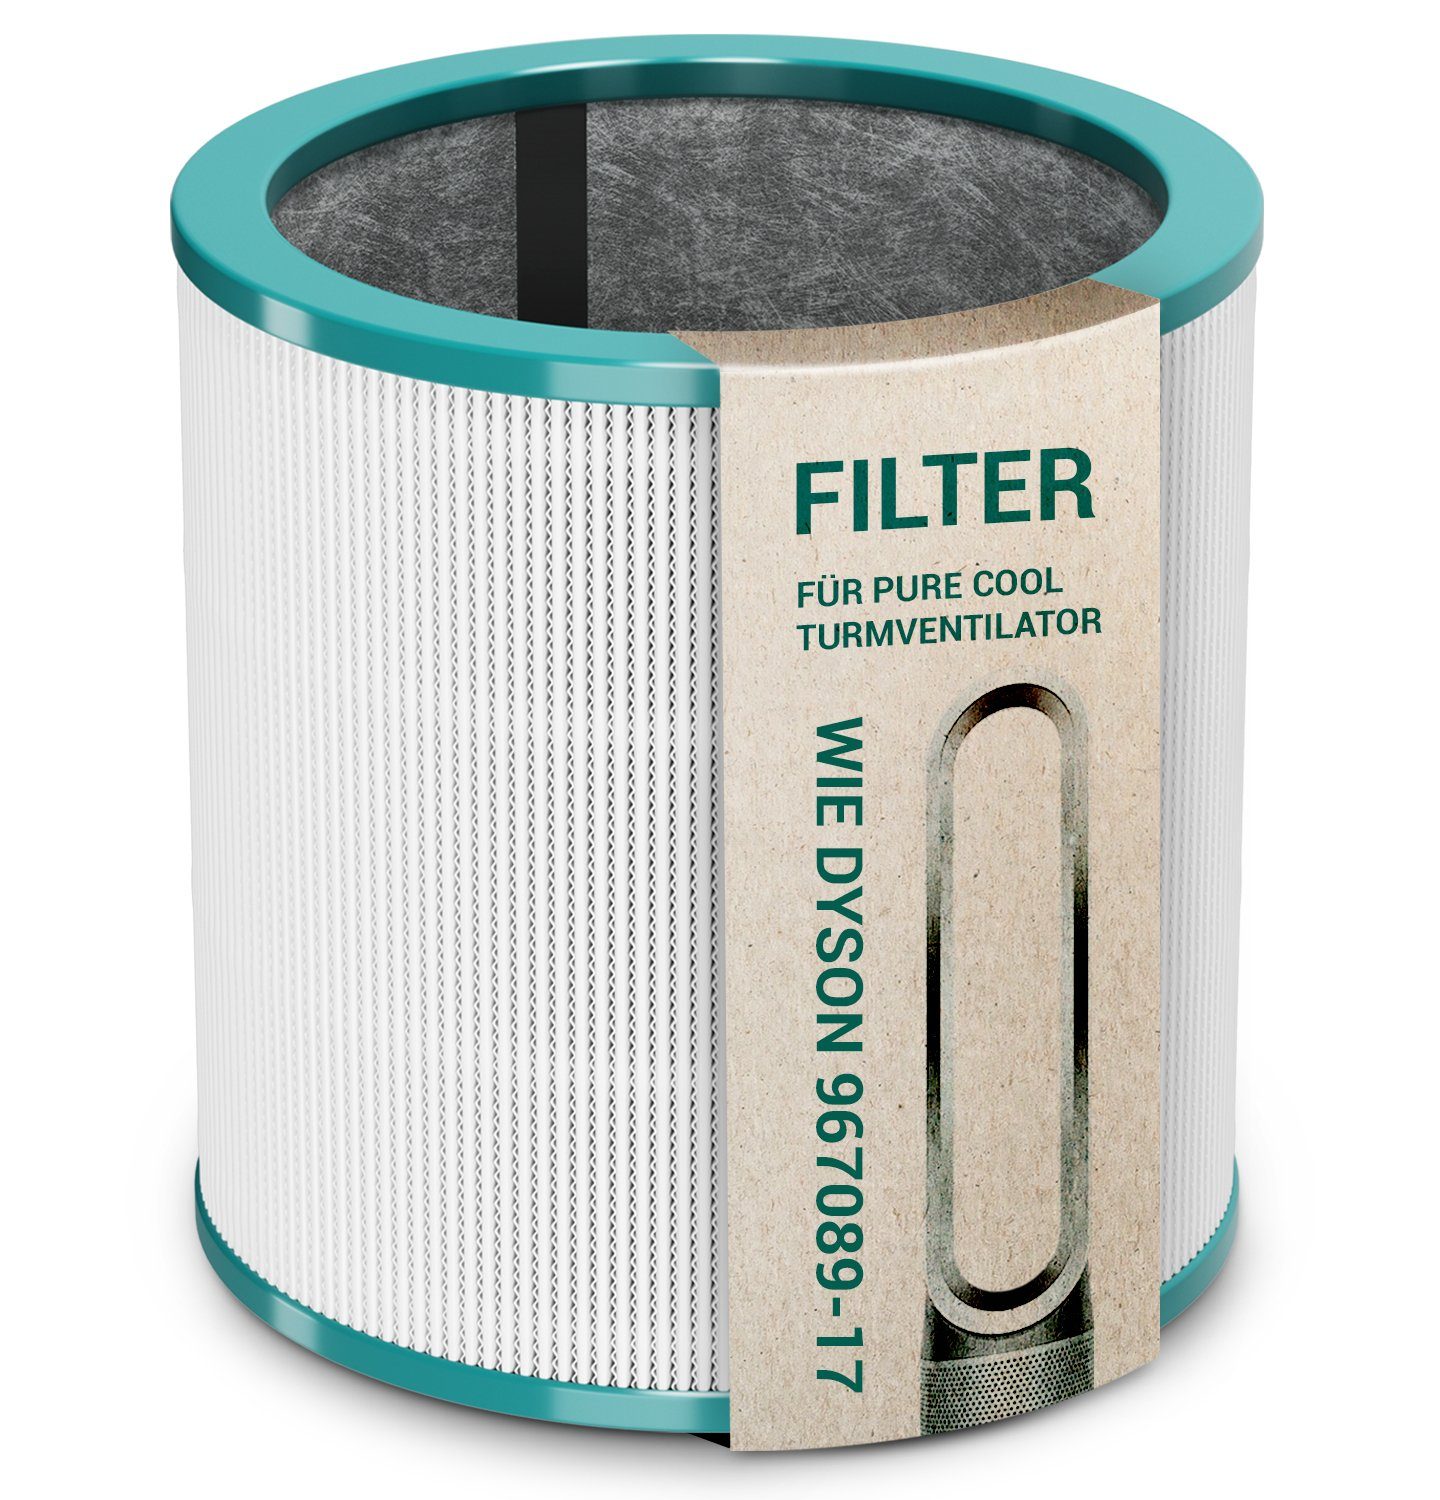 VIOKS Ersatzfilter Filter Ersatz für Dyson 967089-17, für Pure Cool Turmventilator Luftreiniger